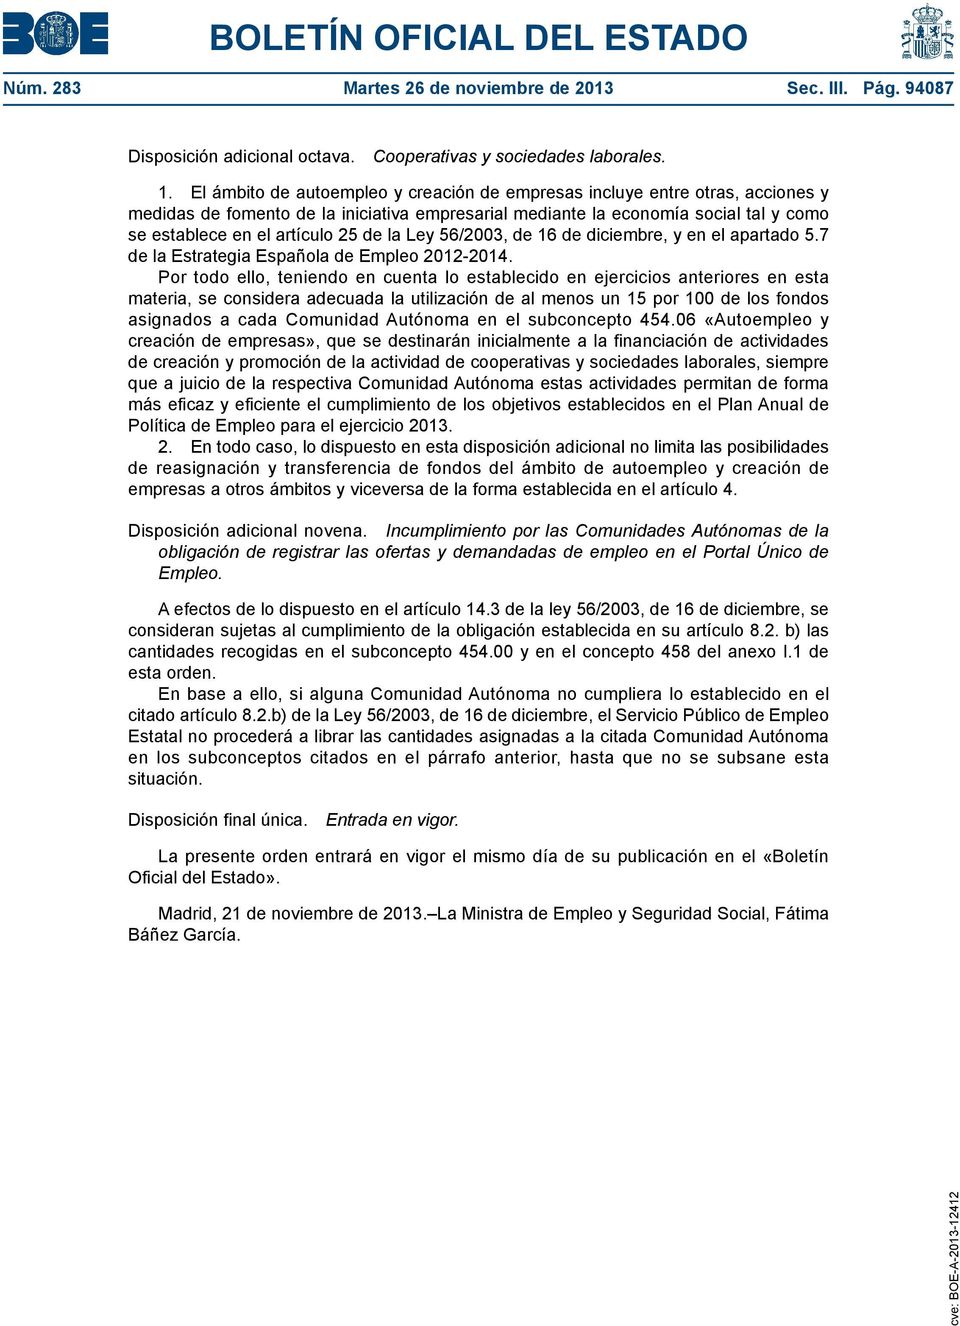 la Ley 56/2003, de 16 de diciembre, y en el apartado 5.7 de la Estrategia Española de Empleo 2012-2014.